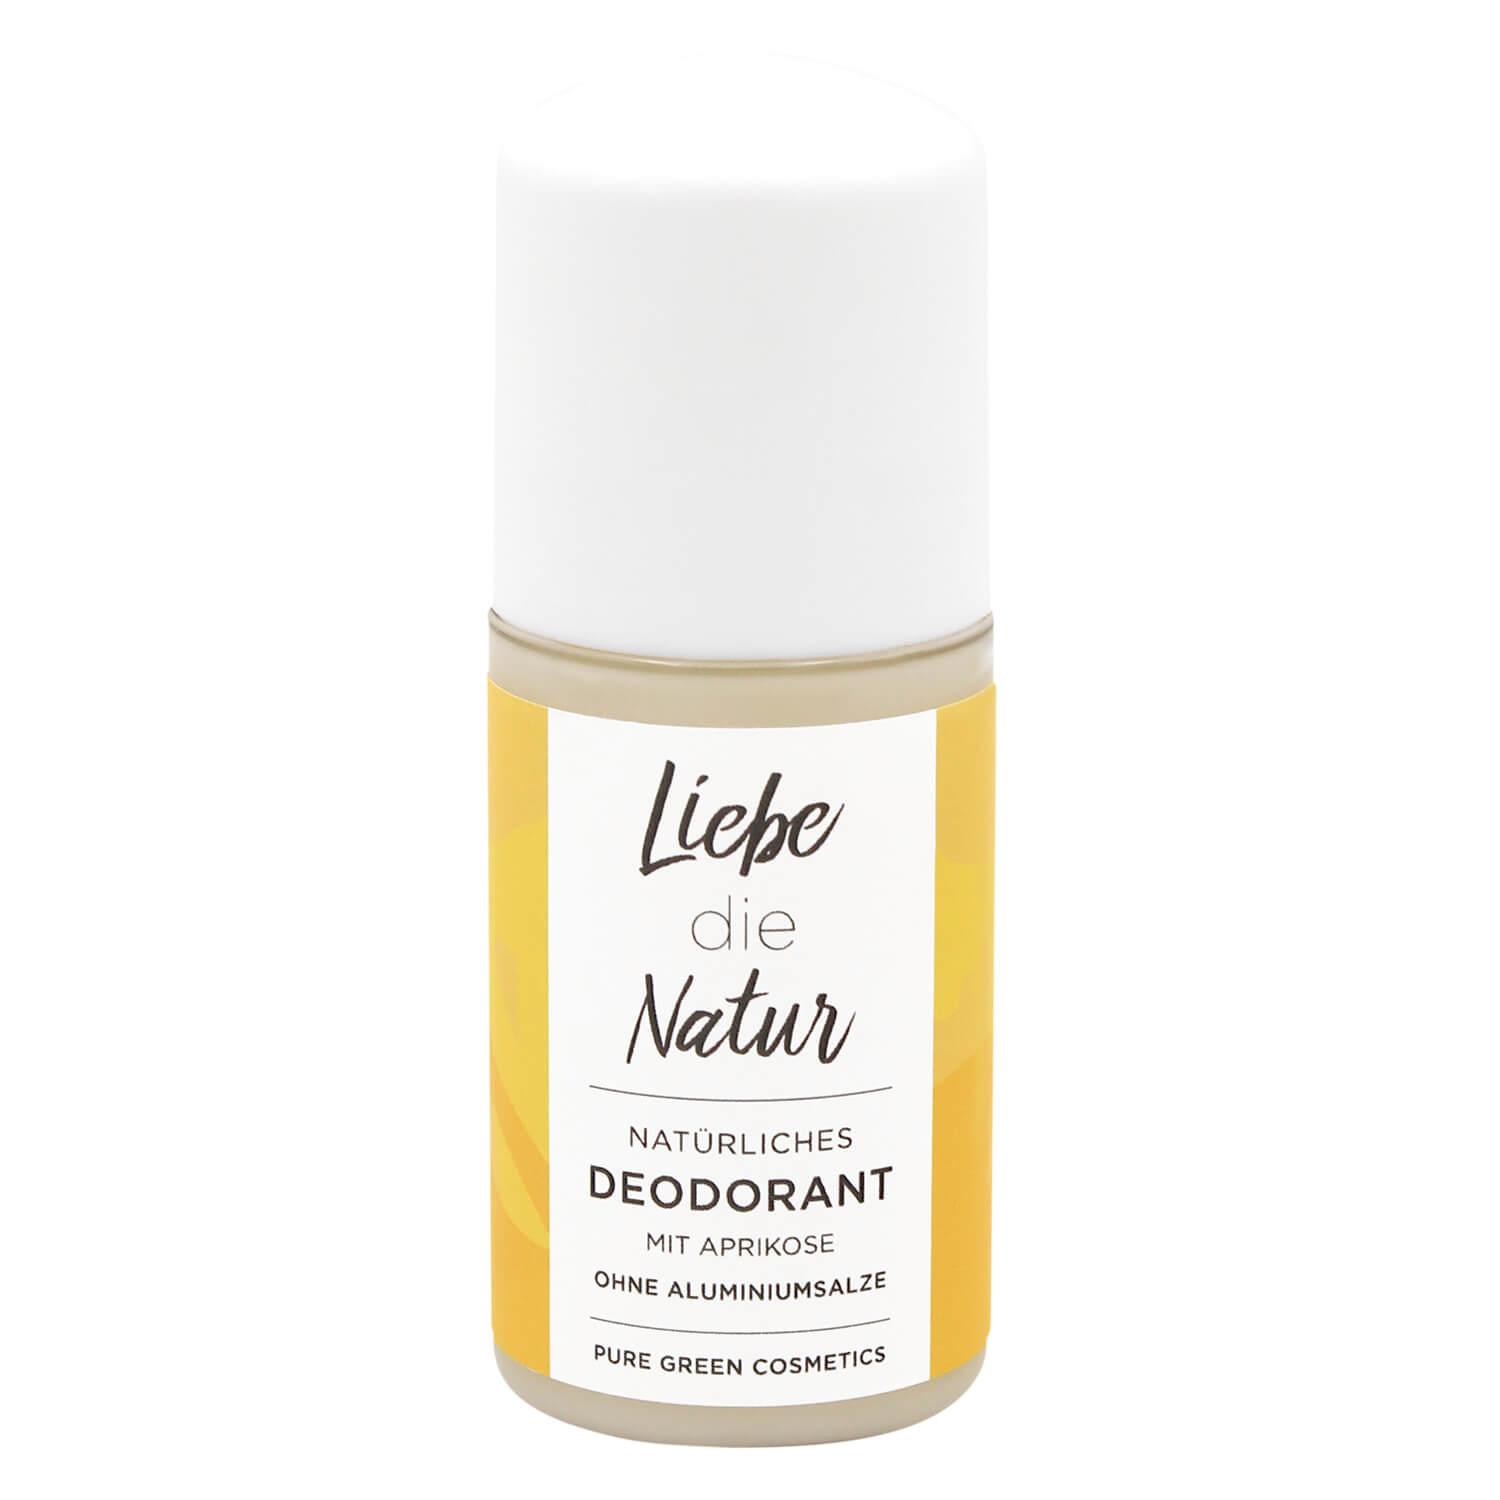 Liebe die Natur - Natürliches Deodorant Aprikose